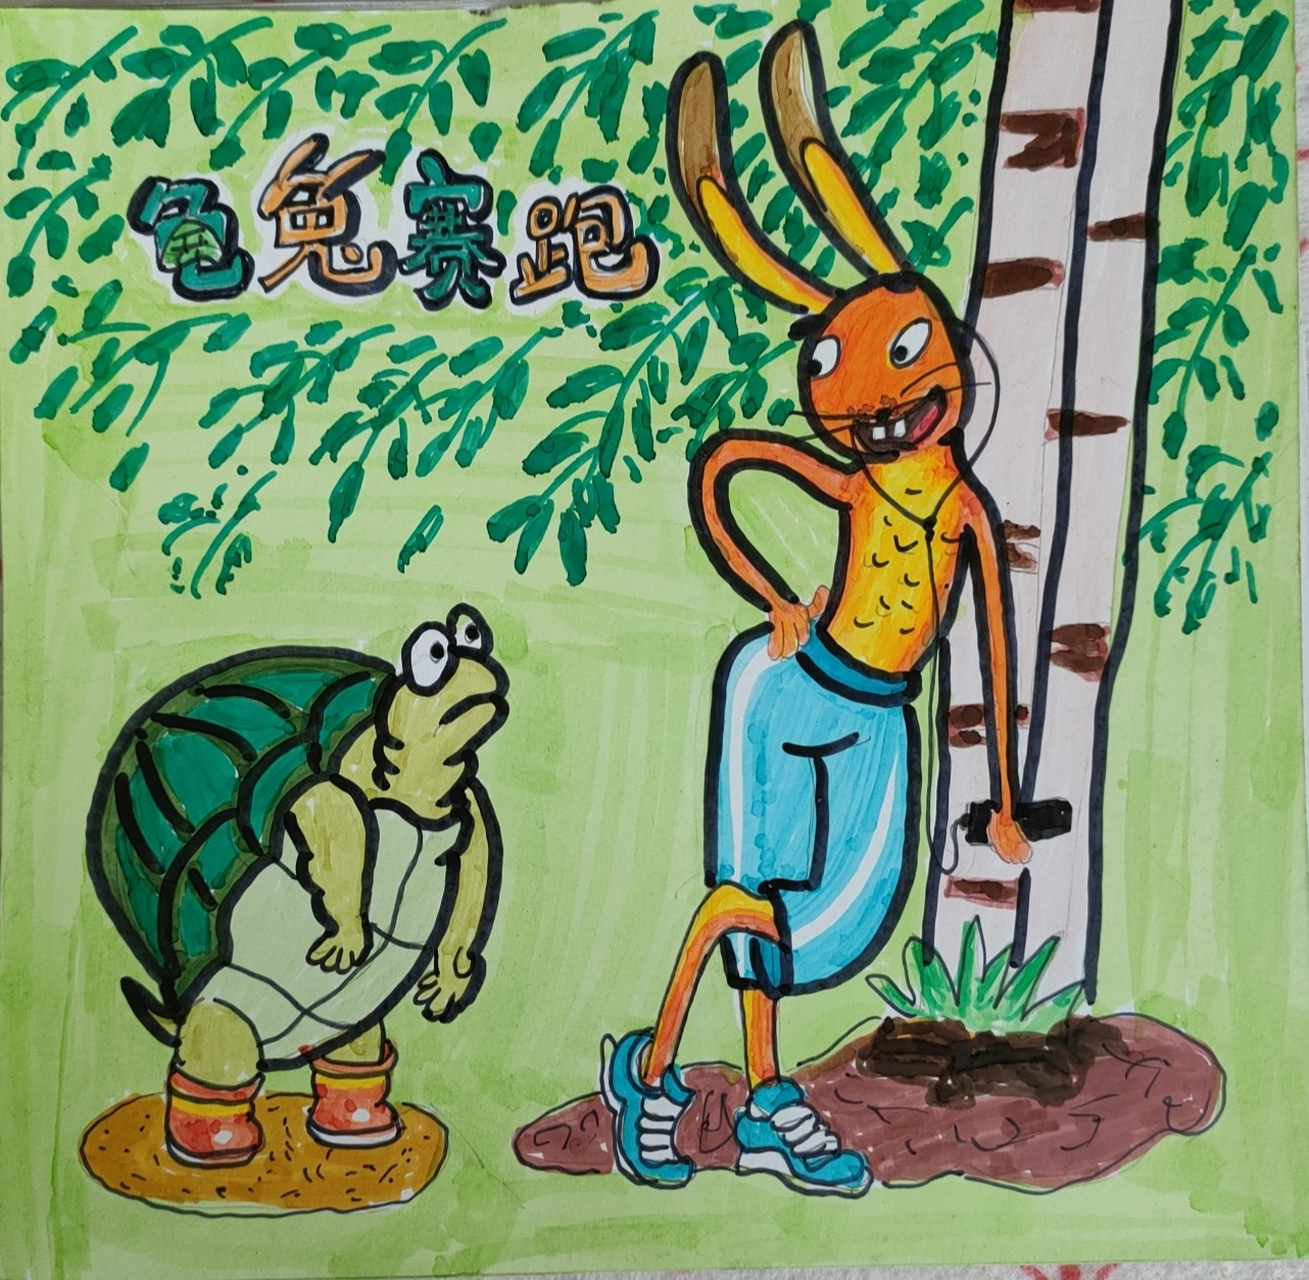 龟兔赛跑英语简笔画图片